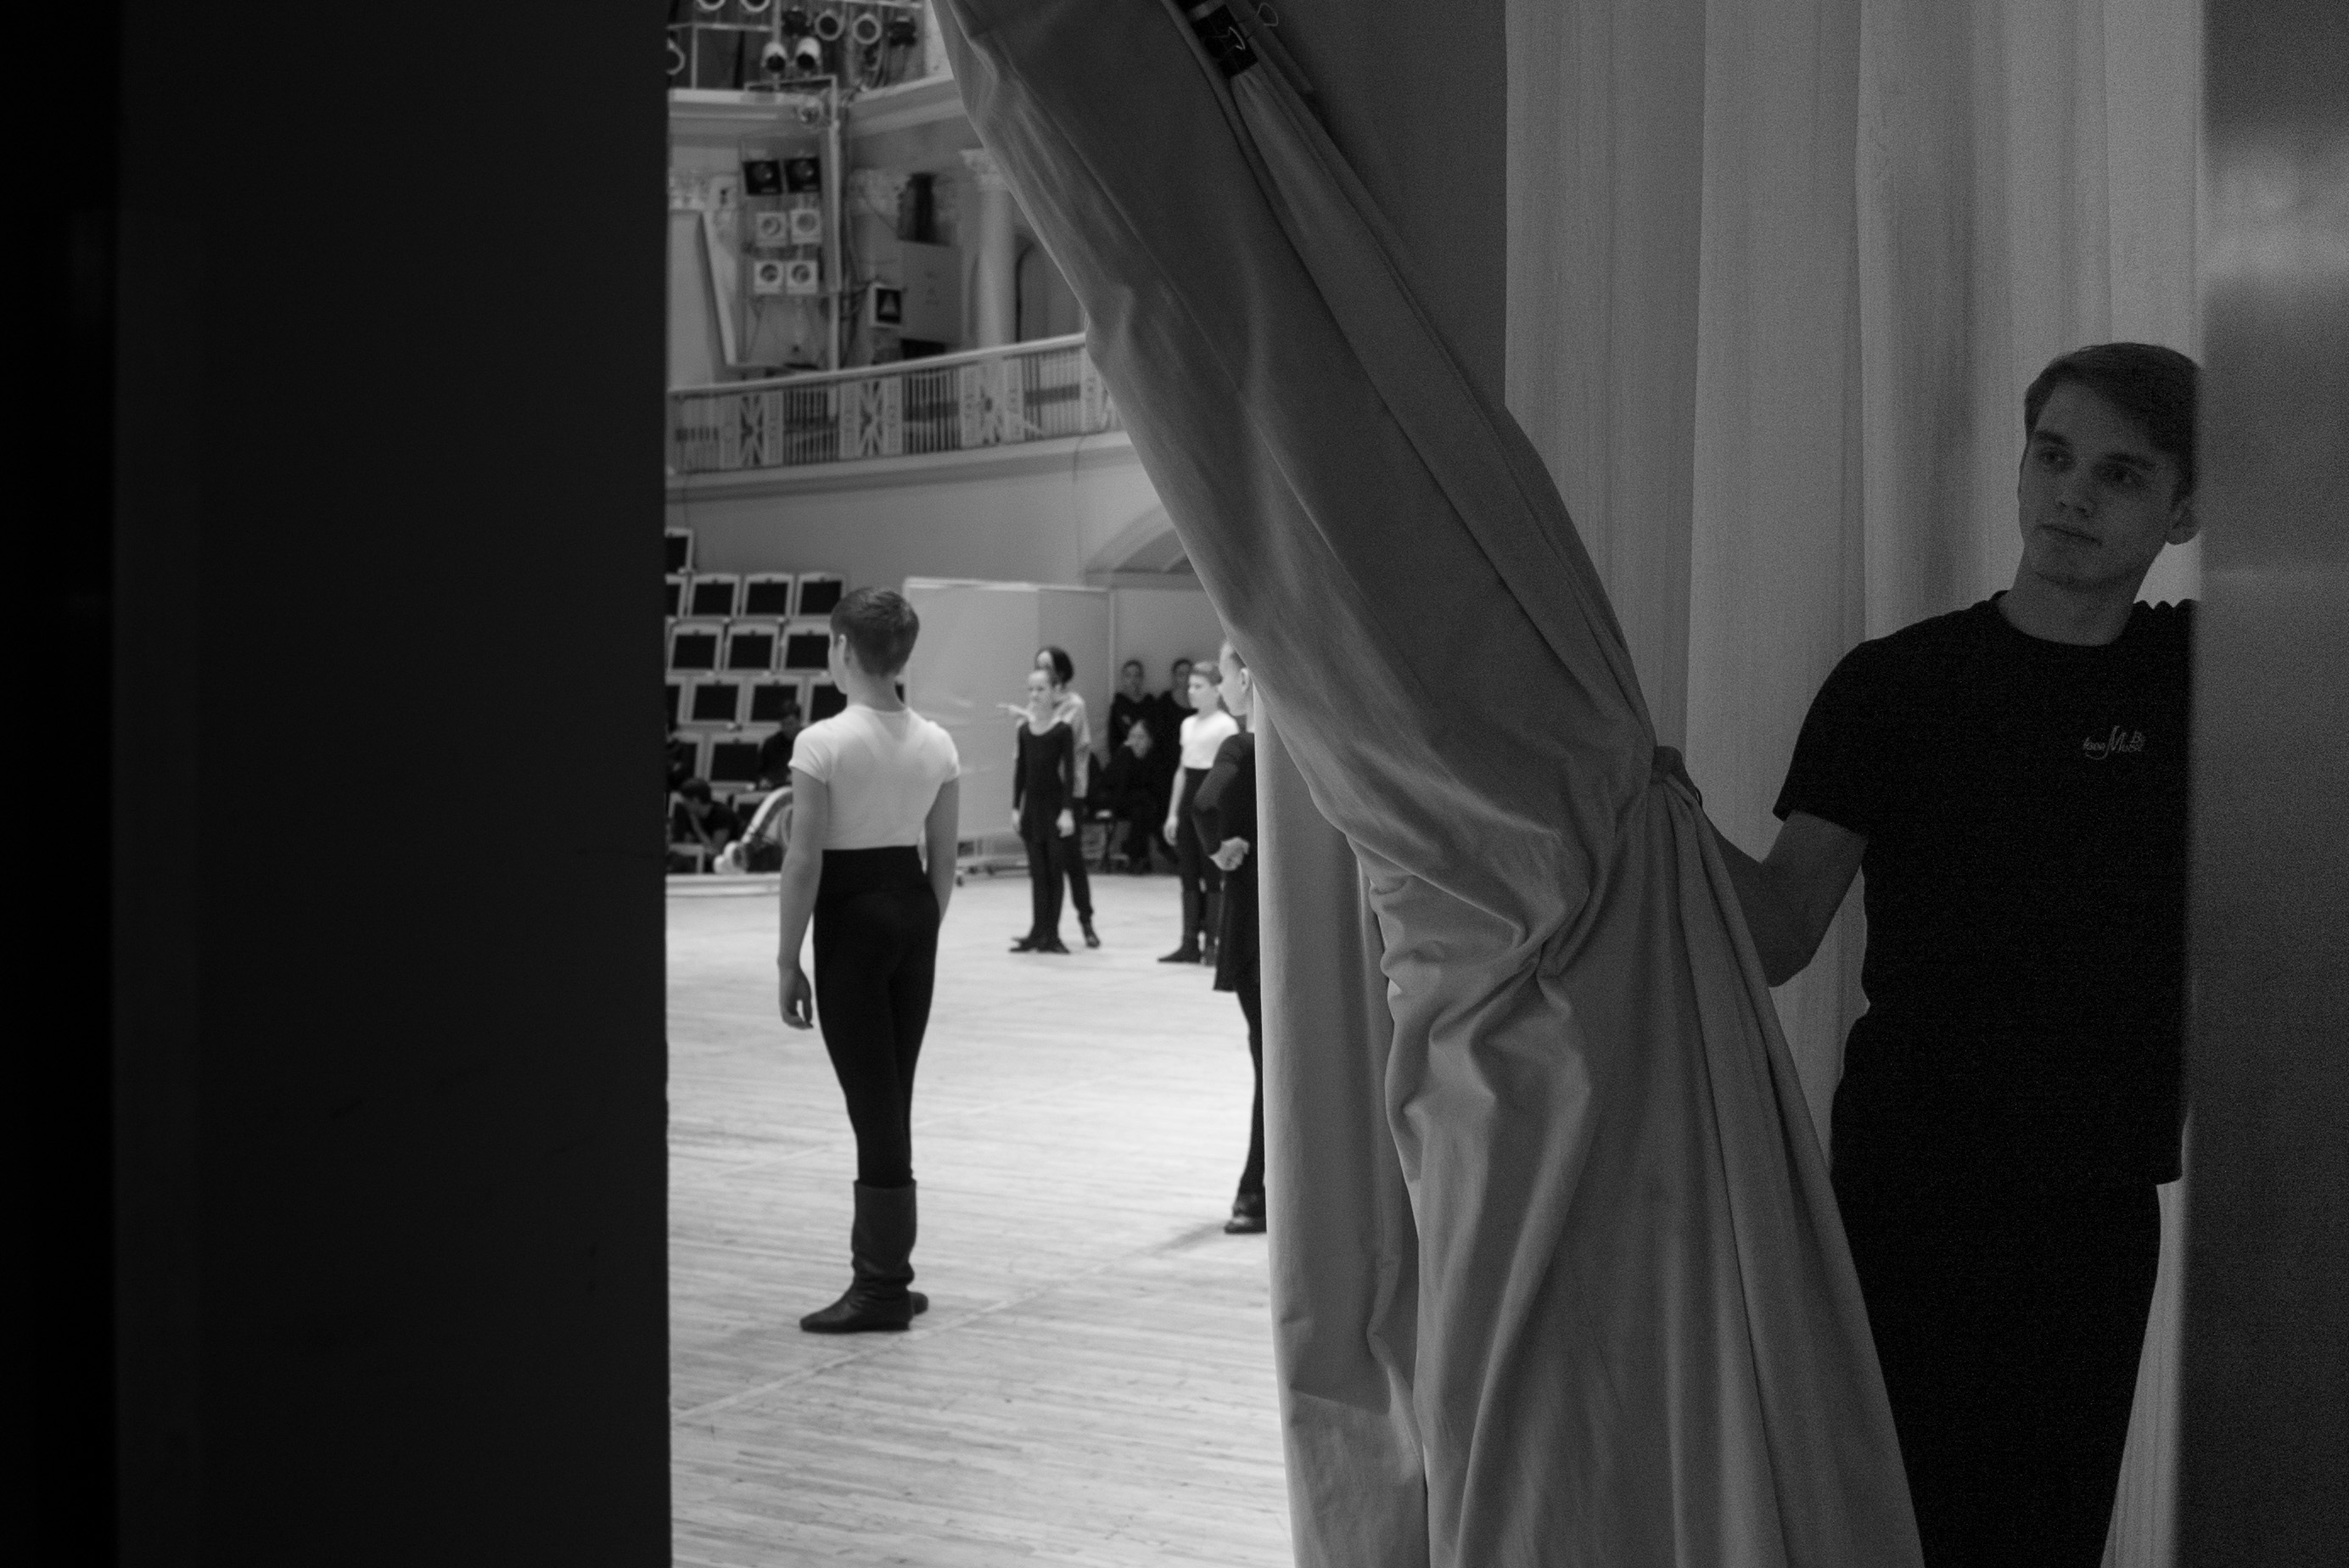 Dietro le quinte di un balletto portato in scena sulla coreografia di Igor Moiseev.